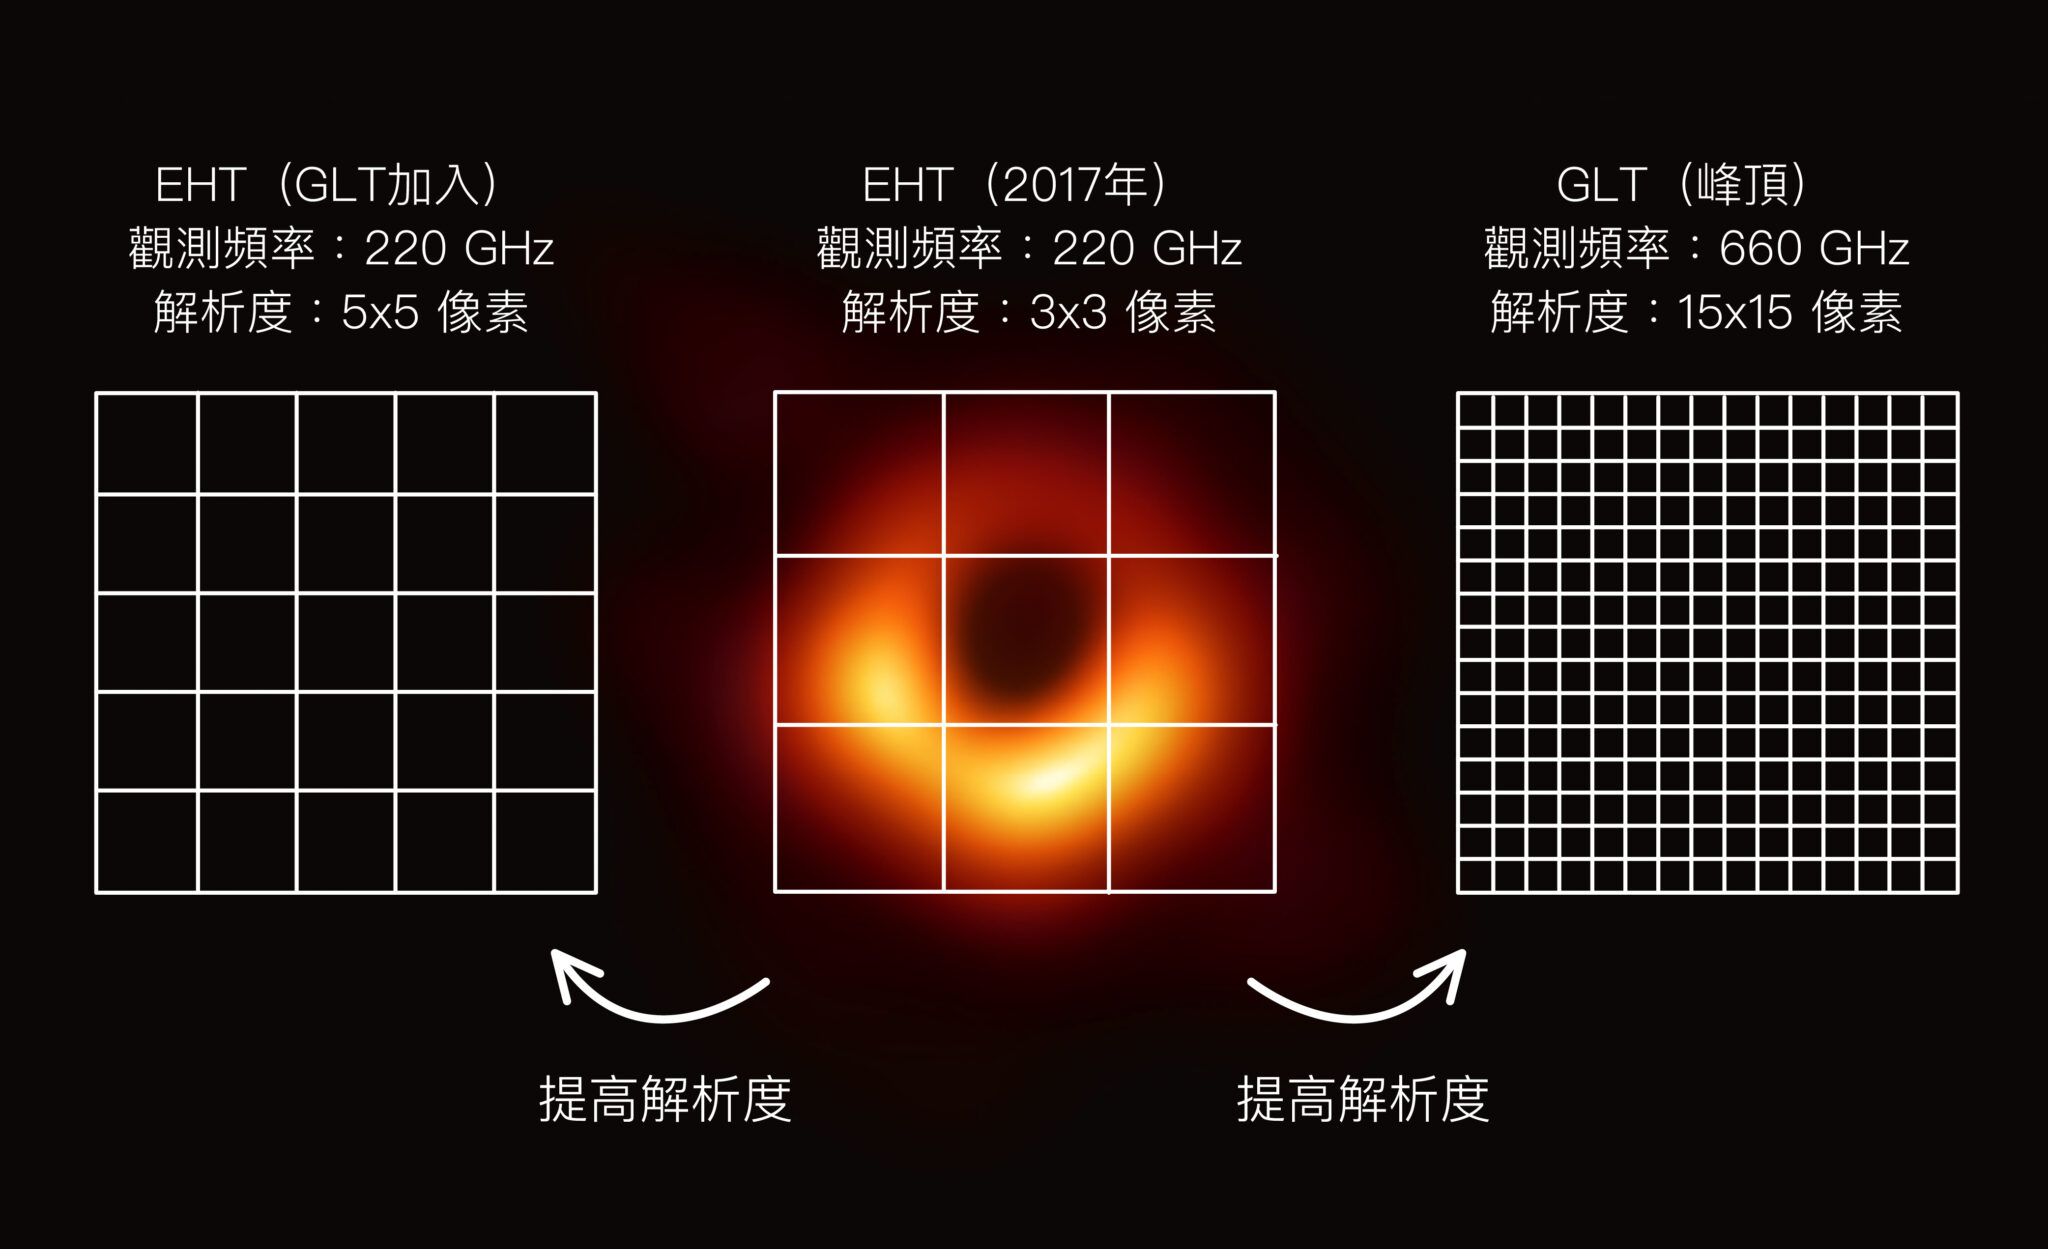 未來在格陵蘭望遠鏡（GLT）和高頻觀測的技術支援下，黑洞照片解析度可望提升到 15×15 像素，圖片中為 M87 黑洞。資料來源｜研之有物